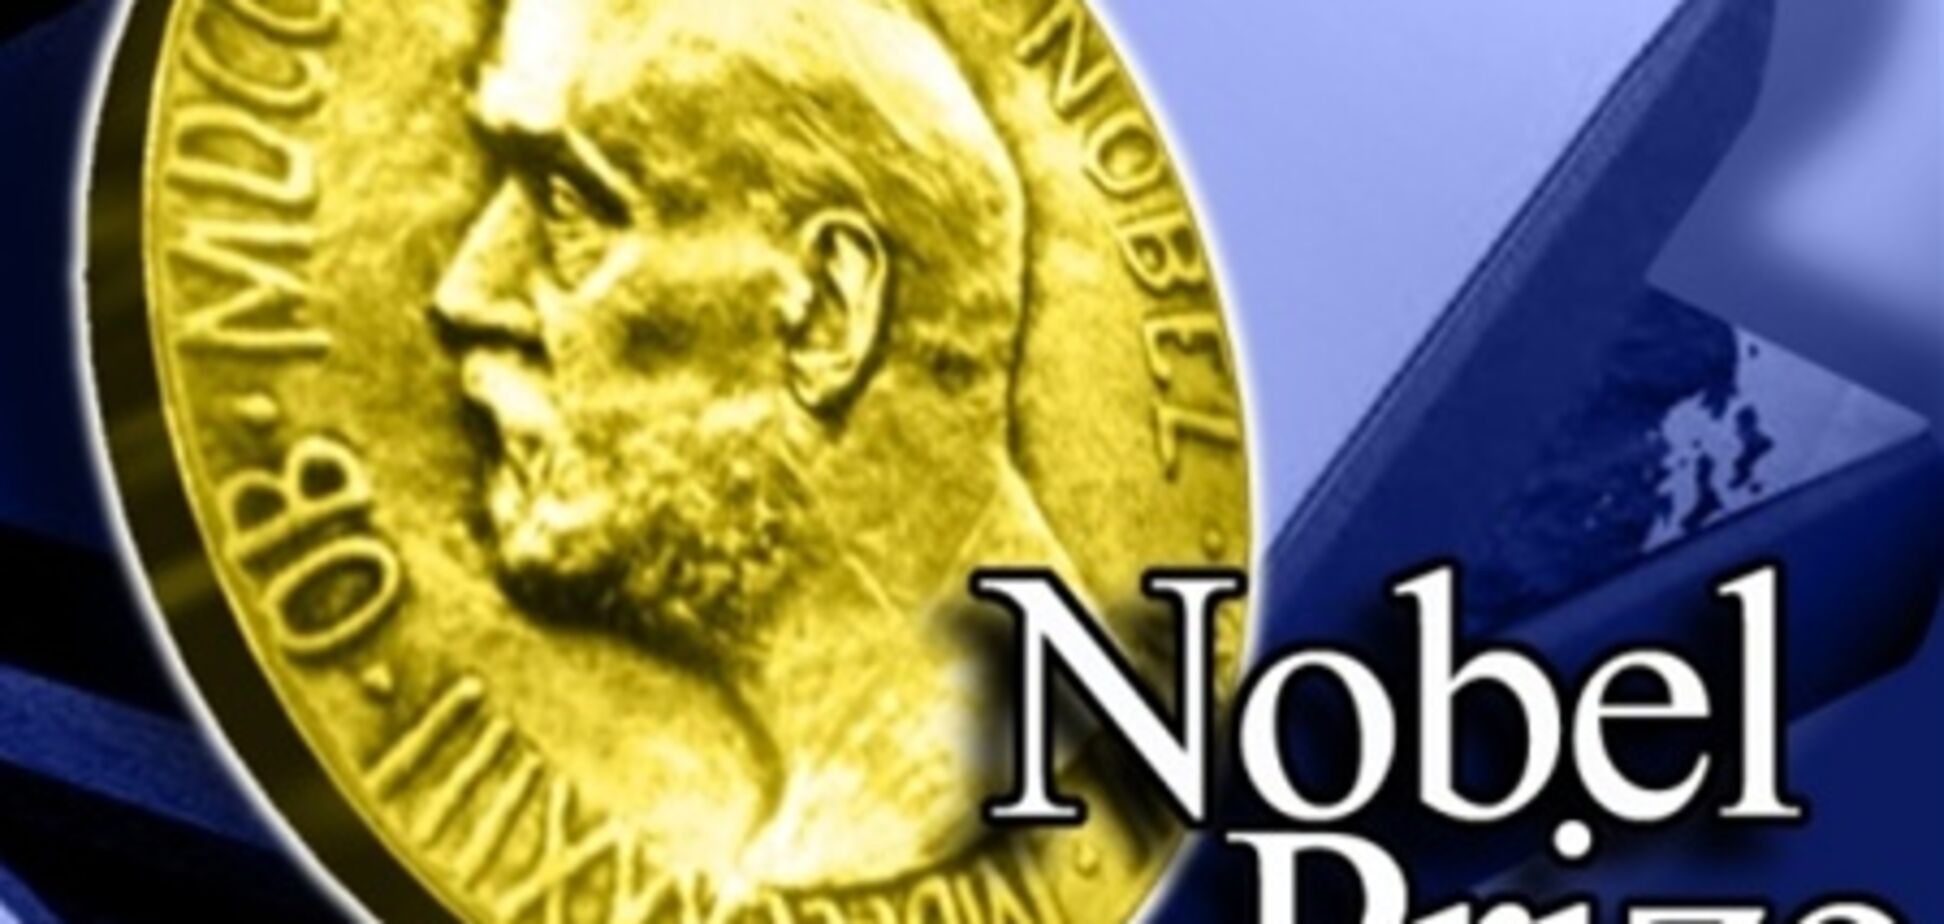 Размер Нобелевской премии уменьшился на 20%